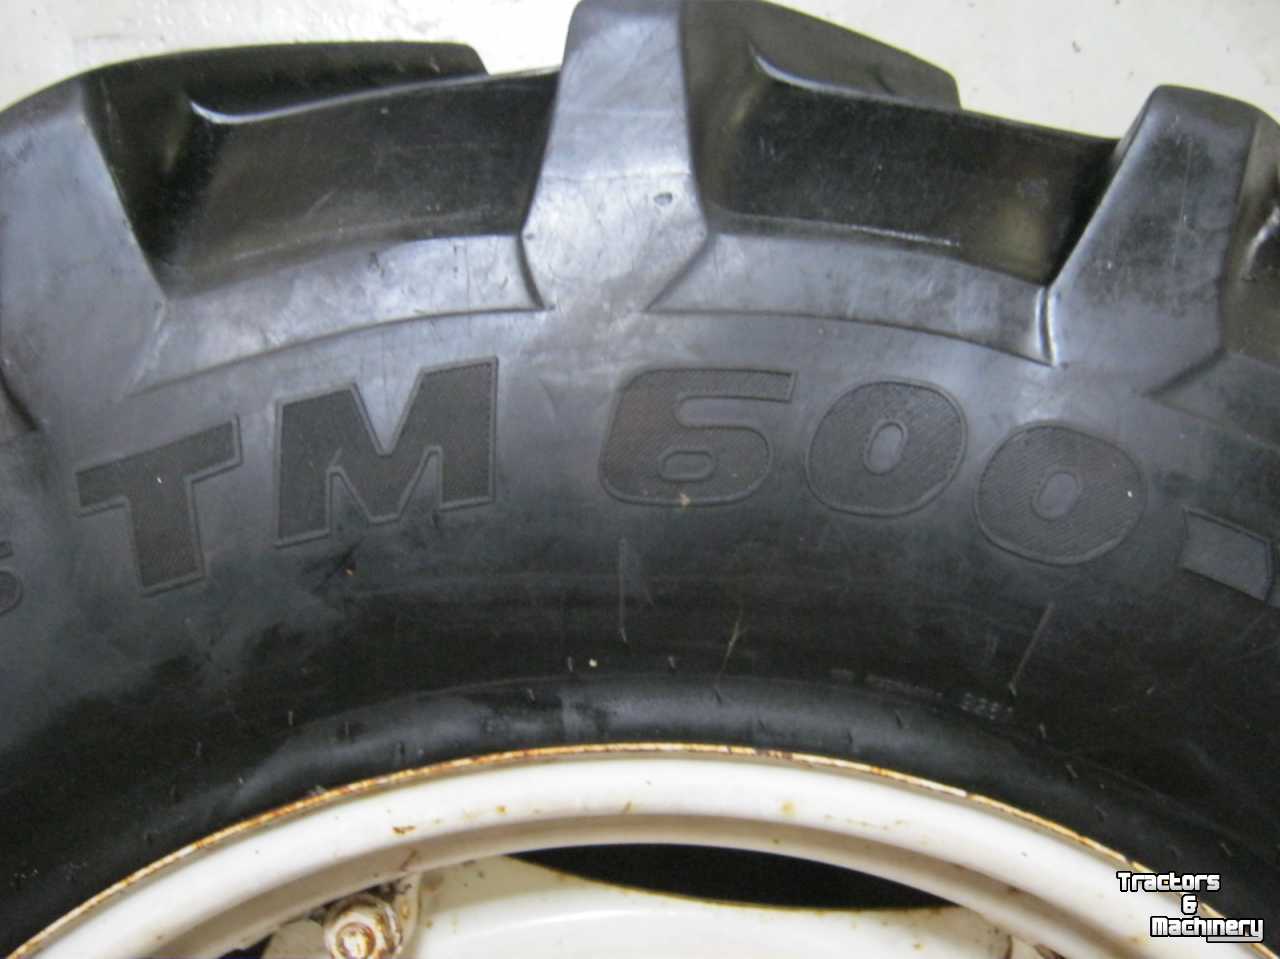 Wheels, Tyres, Rims & Dual spacers Pirelli 380/85R28 TM600